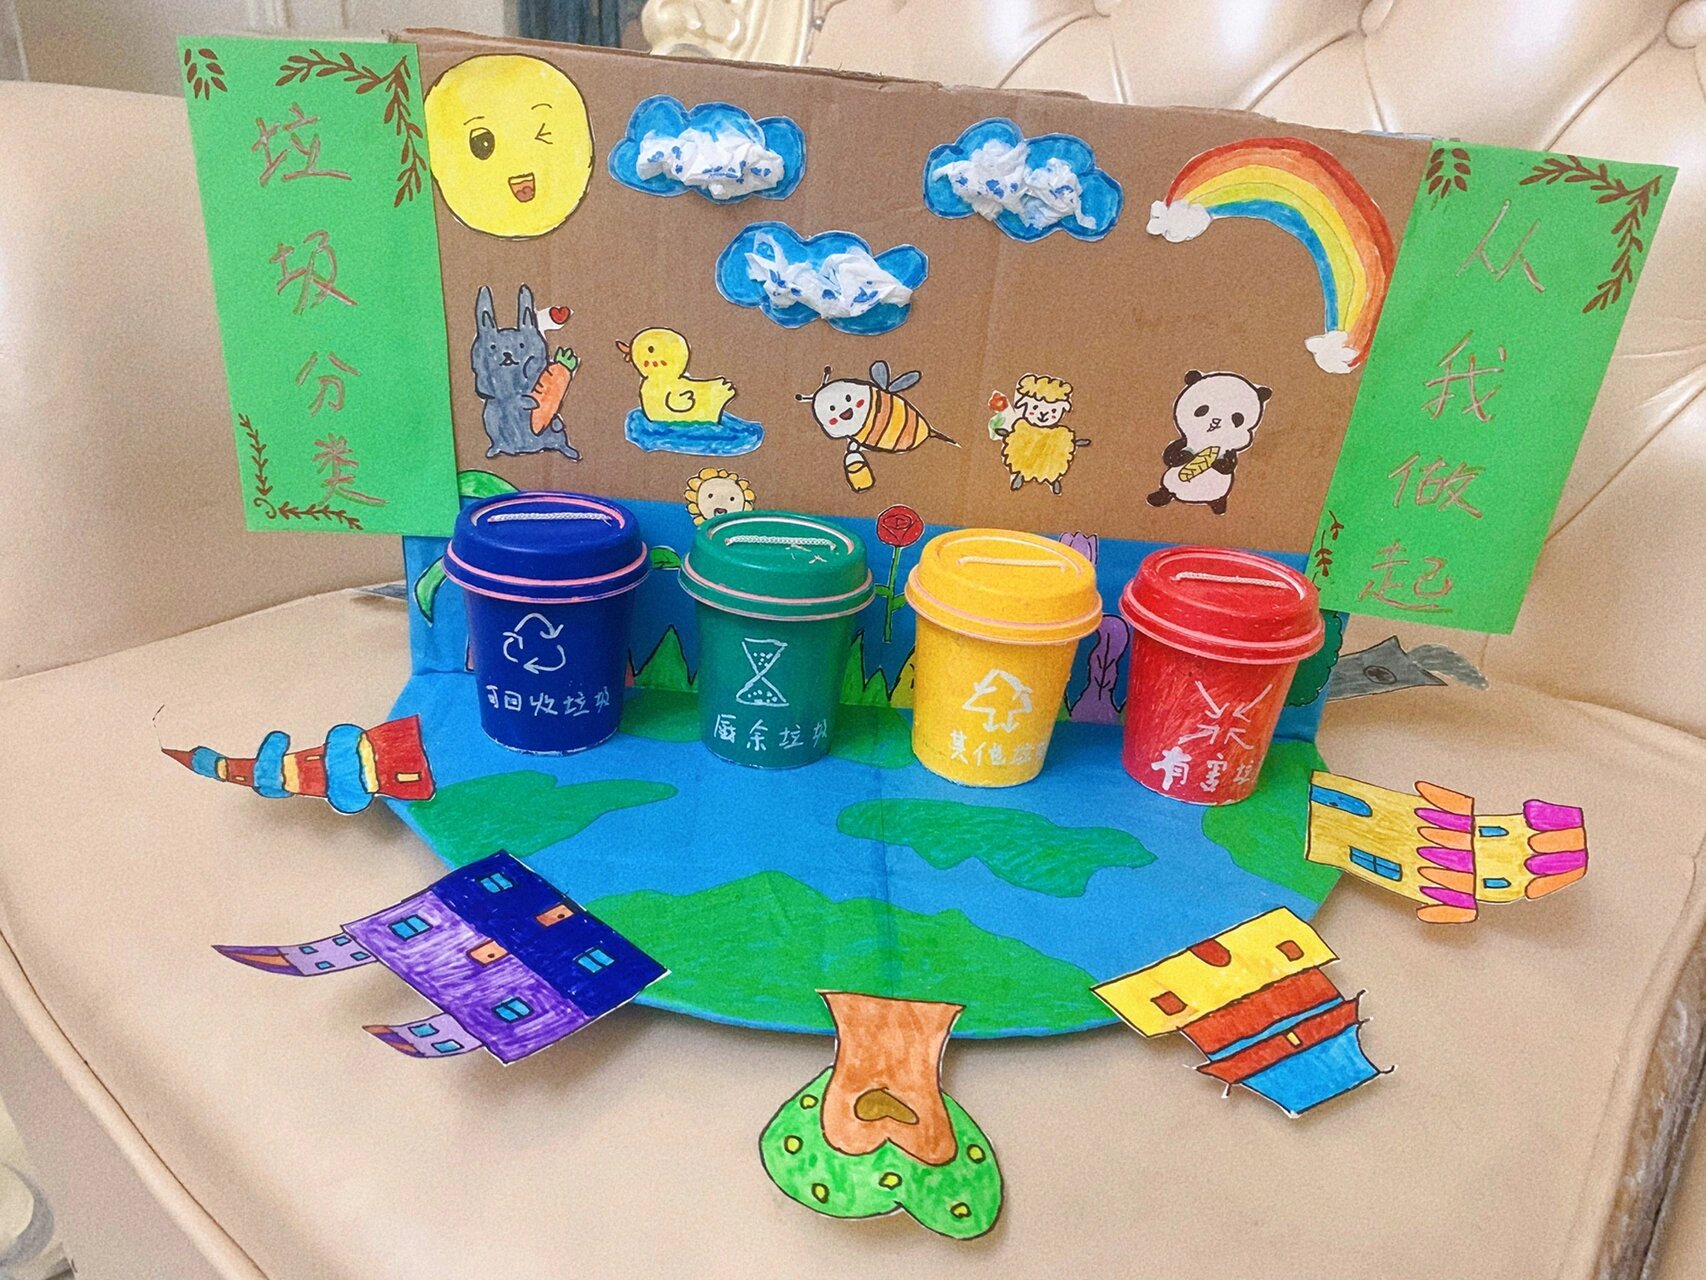 国庆假期,幼儿园布置了作业——废物利用制作垃圾分类手工,熬了三个